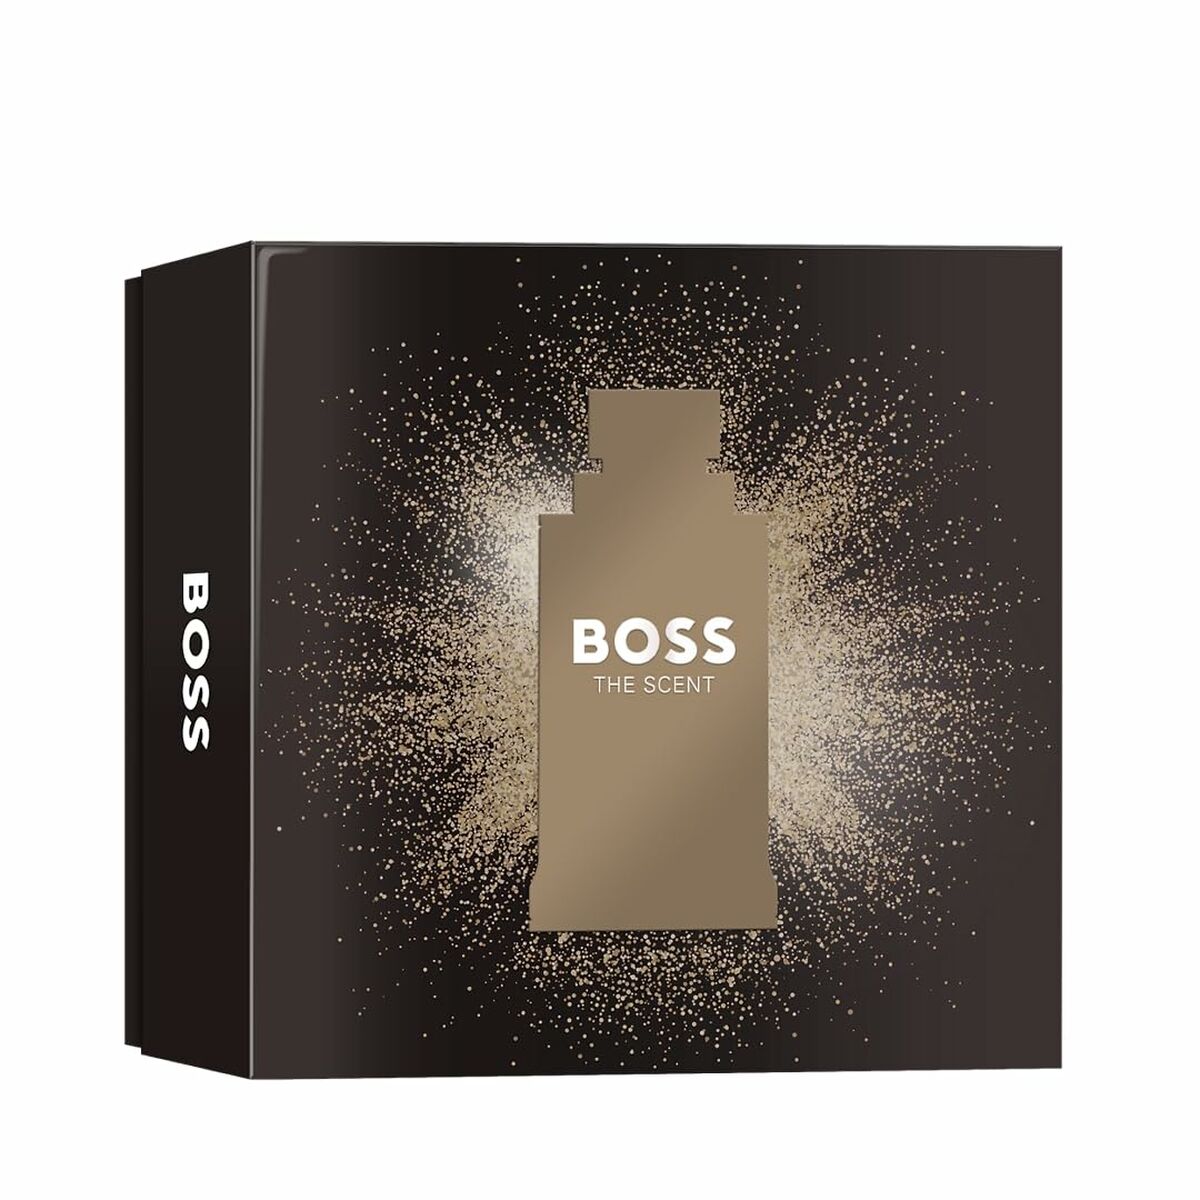 Kaufe Set mit Hugo Boss EDT BOSS The Scent 2 Stück - Herren bei AWK Flagship um € 81.00